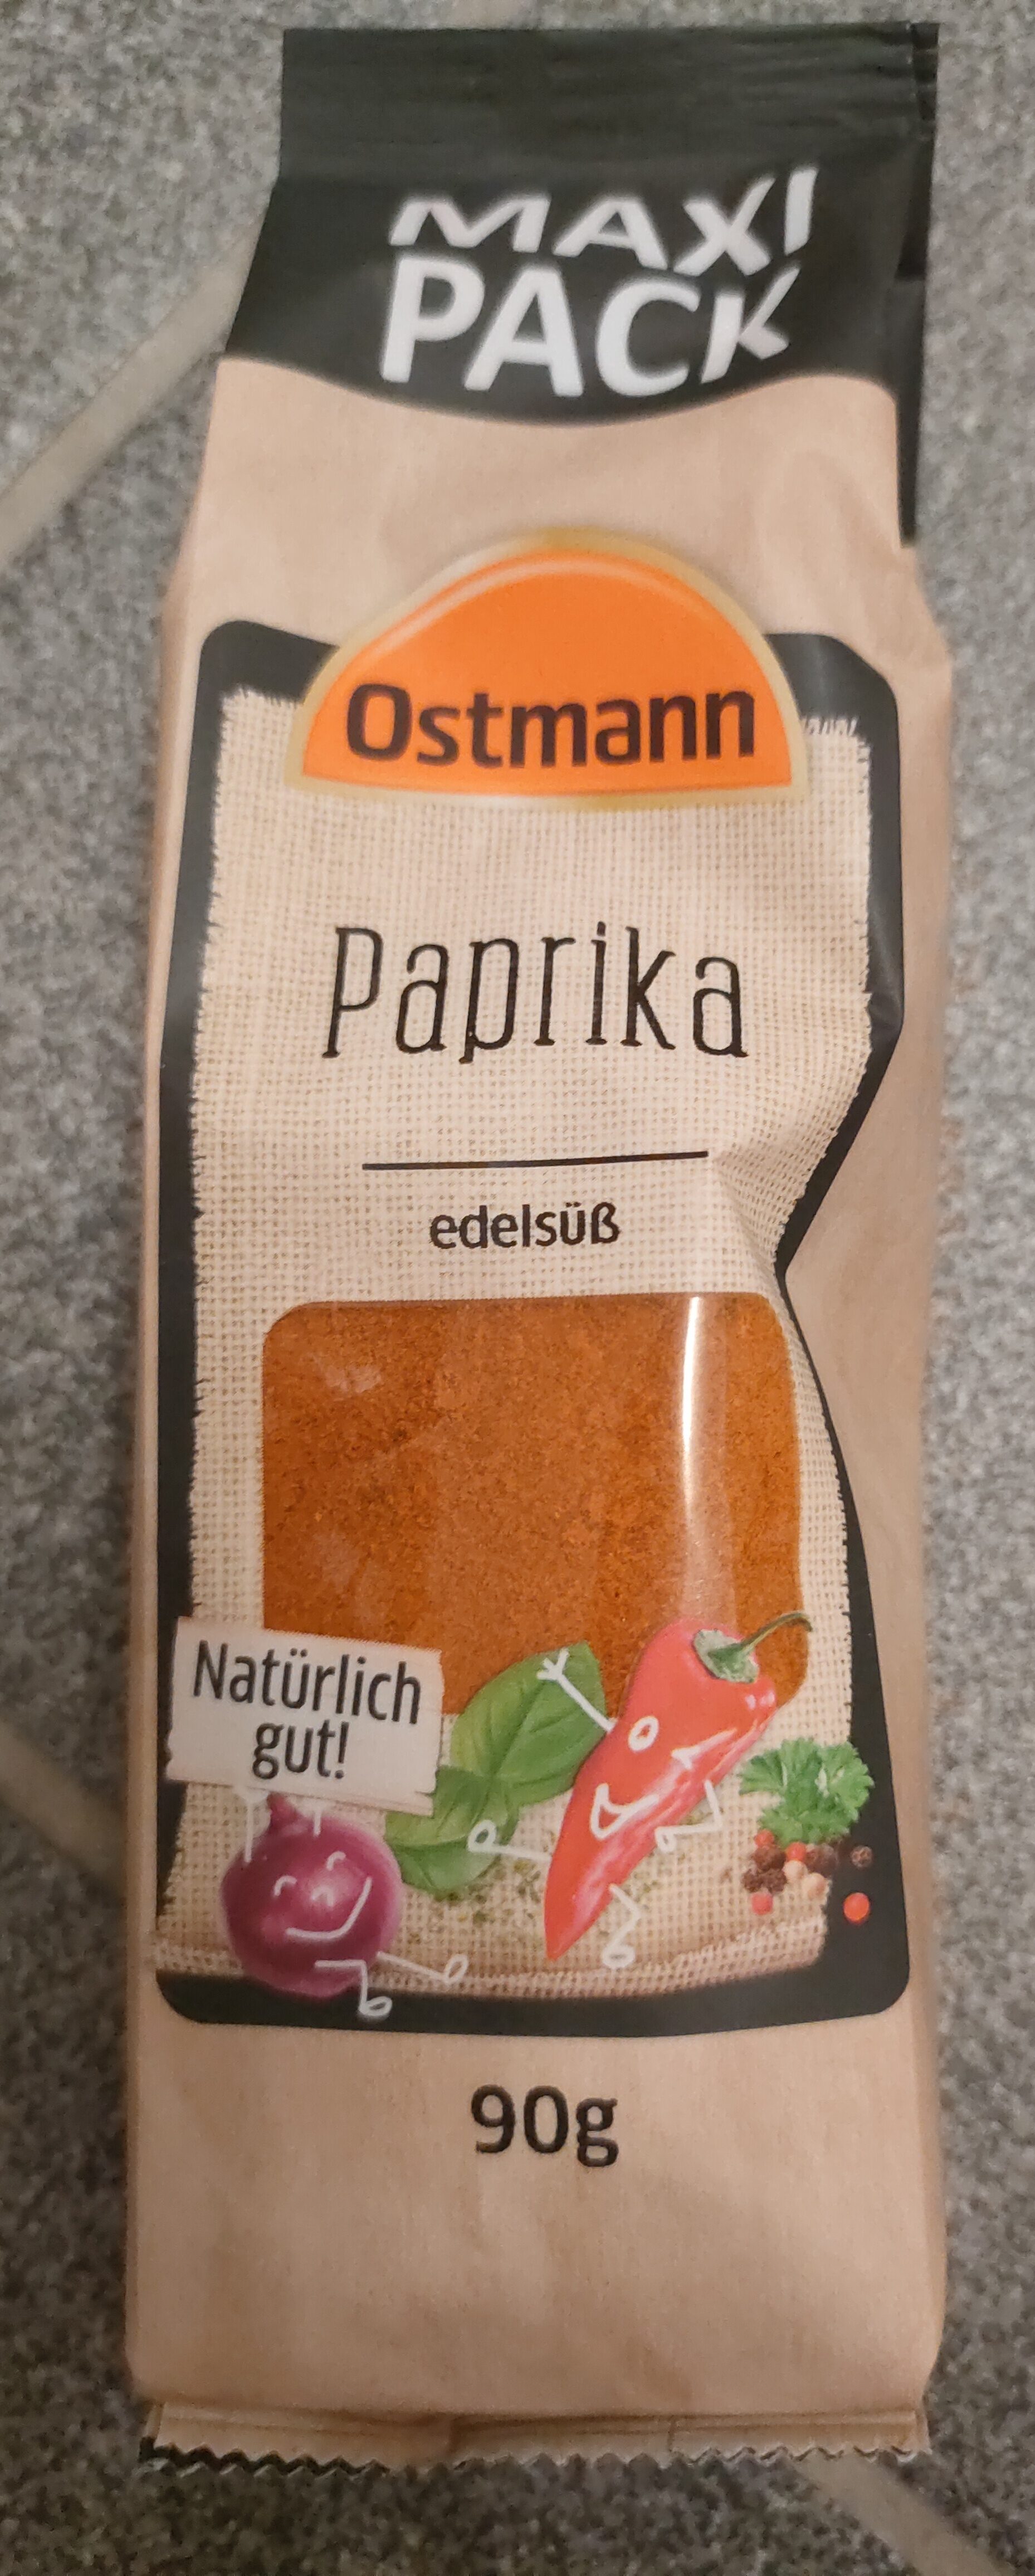 Paprika Pulver edelsüß - Product - de